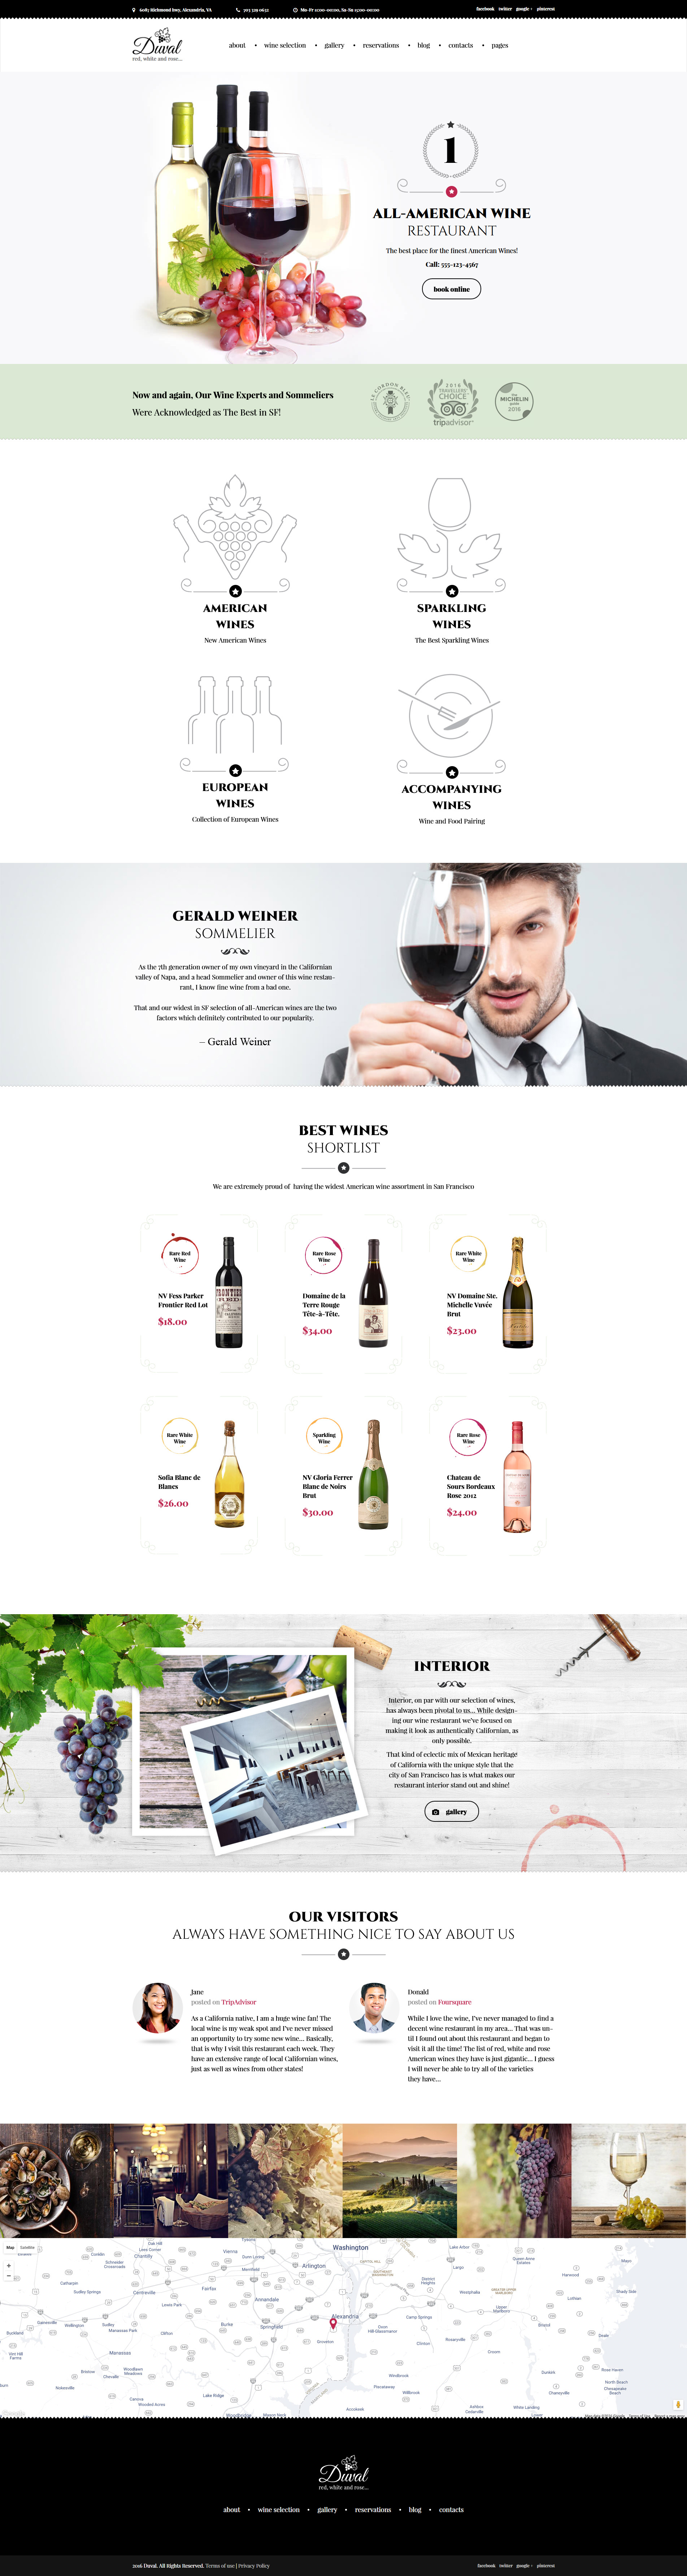 Duval - Vineyard, Winery WordPress Theme